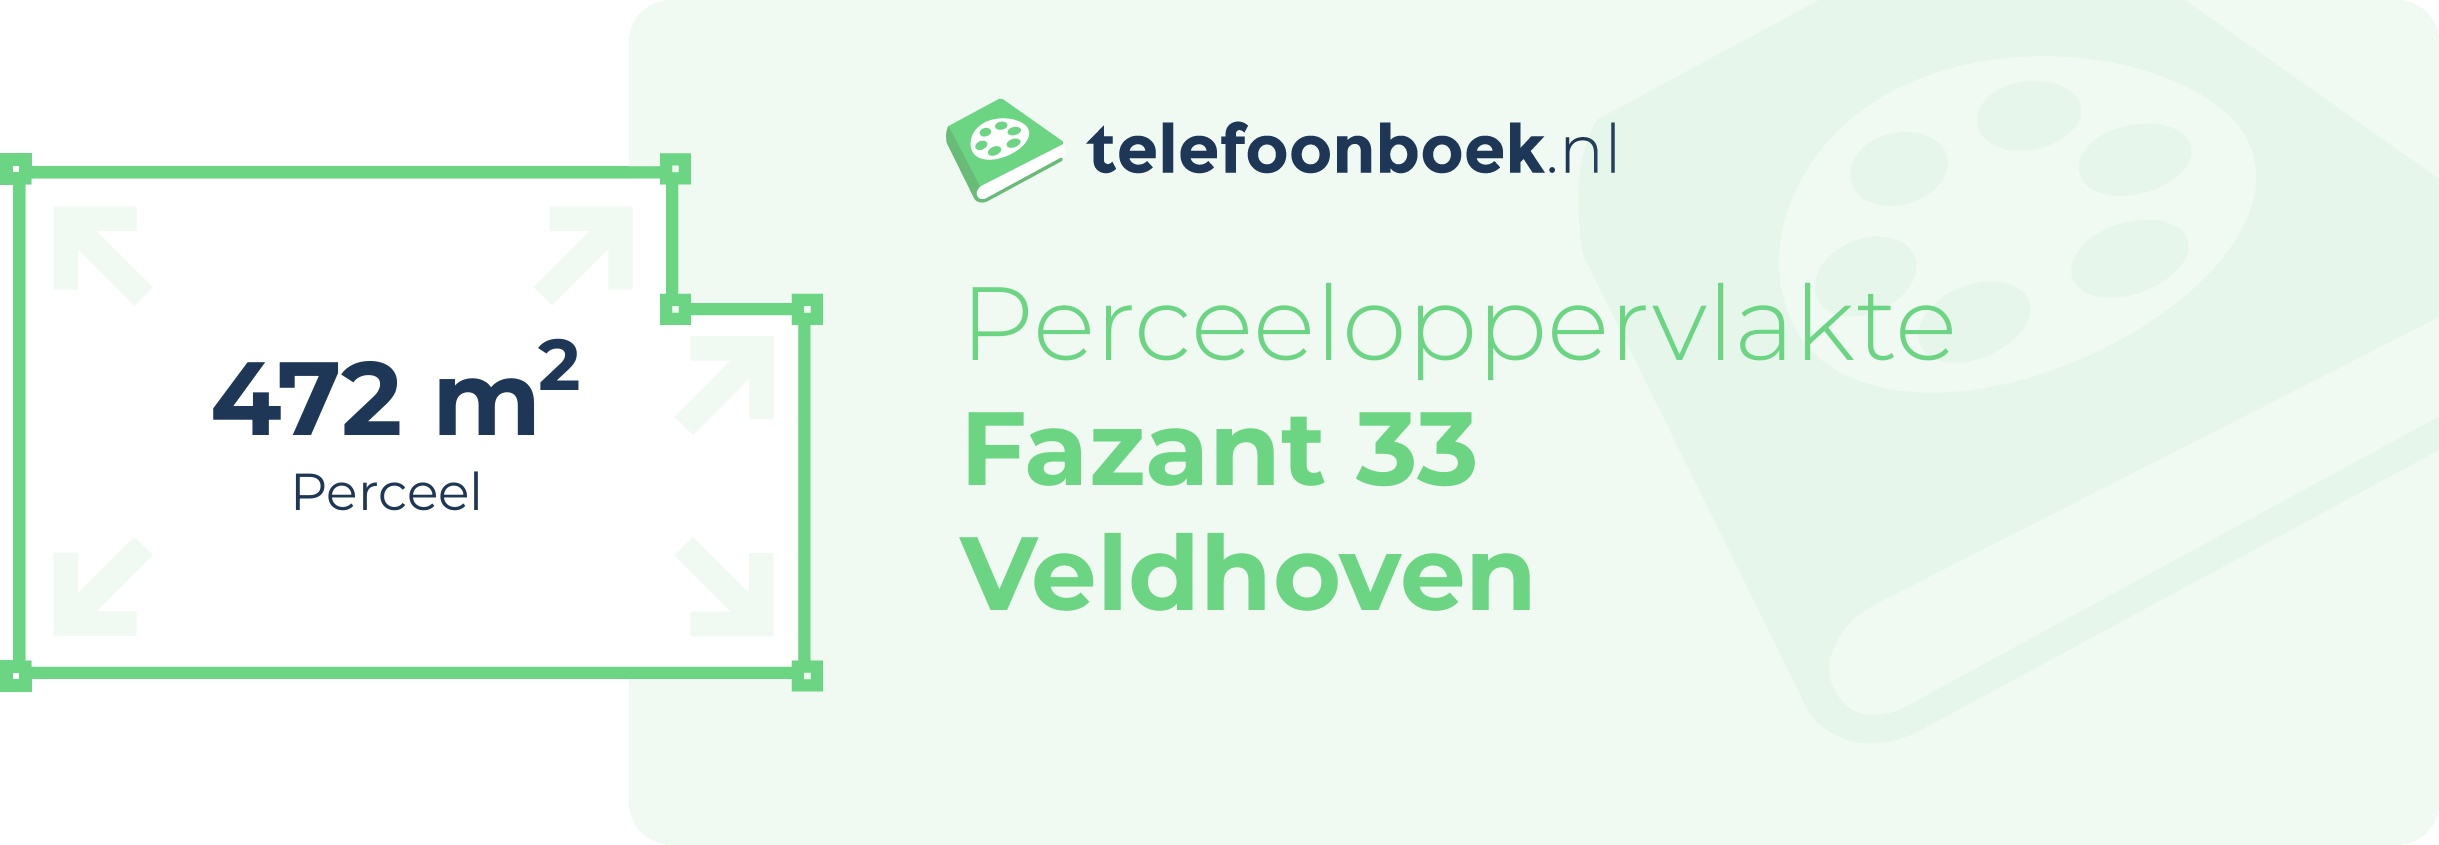 Perceeloppervlakte Fazant 33 Veldhoven